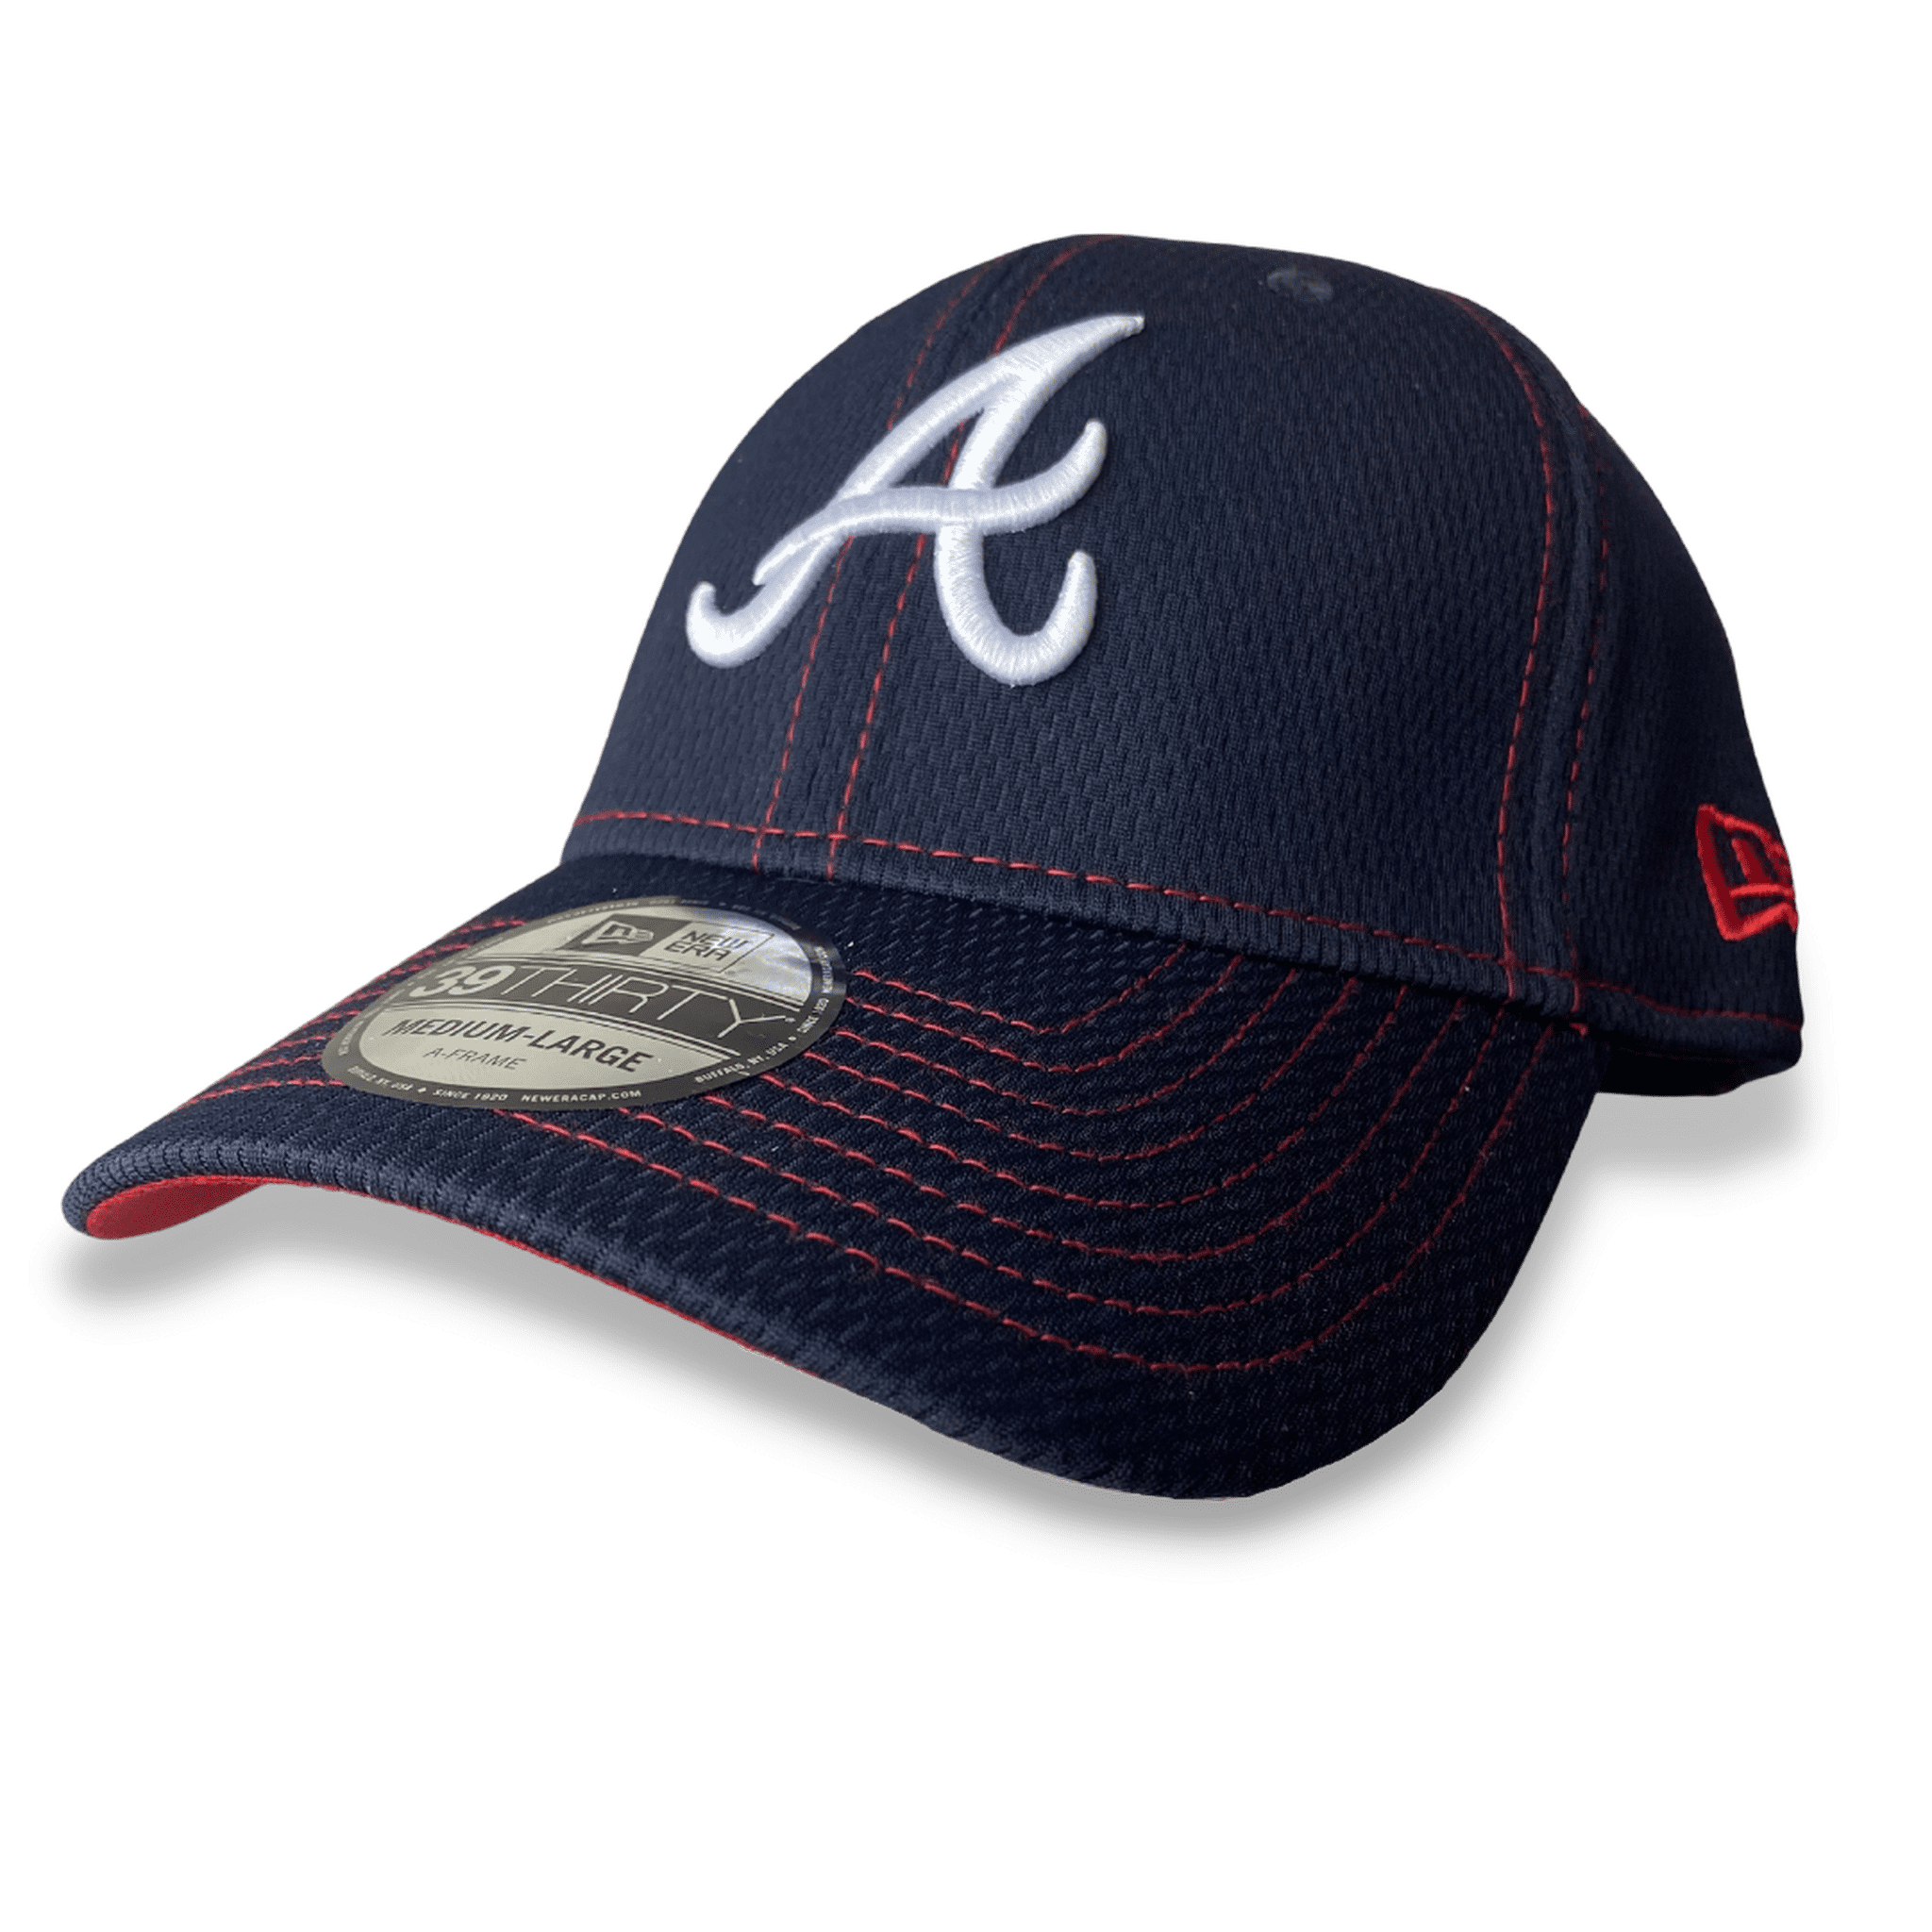 New Era / Men's Atlanta Braves Navy Distinct 39Thirty Stretch Fit Hat